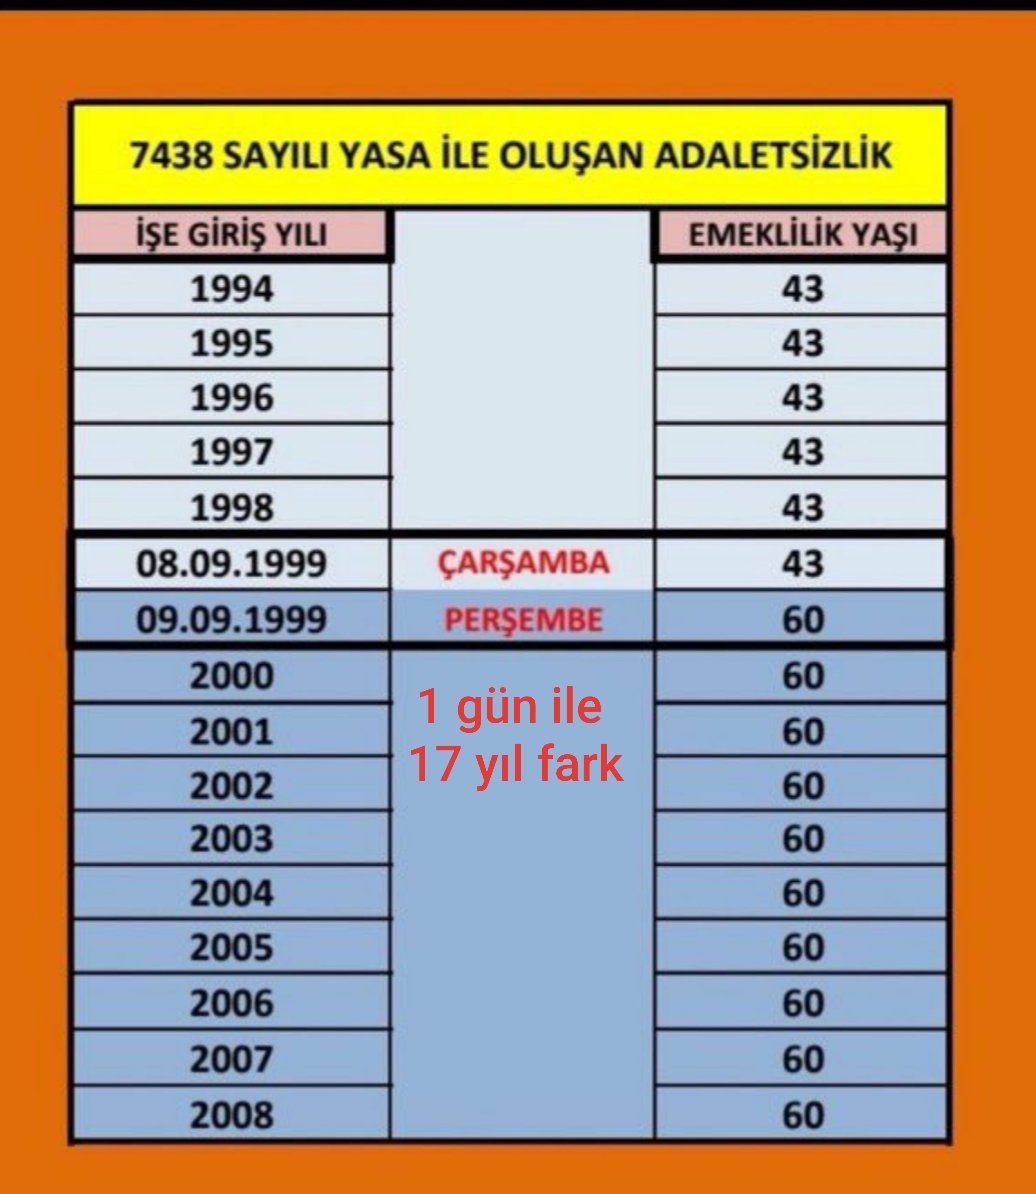 Adalet ve eşitlik için....

#KademeliEmeklilik #AKParti #CHP #MHP #2000LerinOyuKime #2000LerTorbaYasaya #Emeklilik